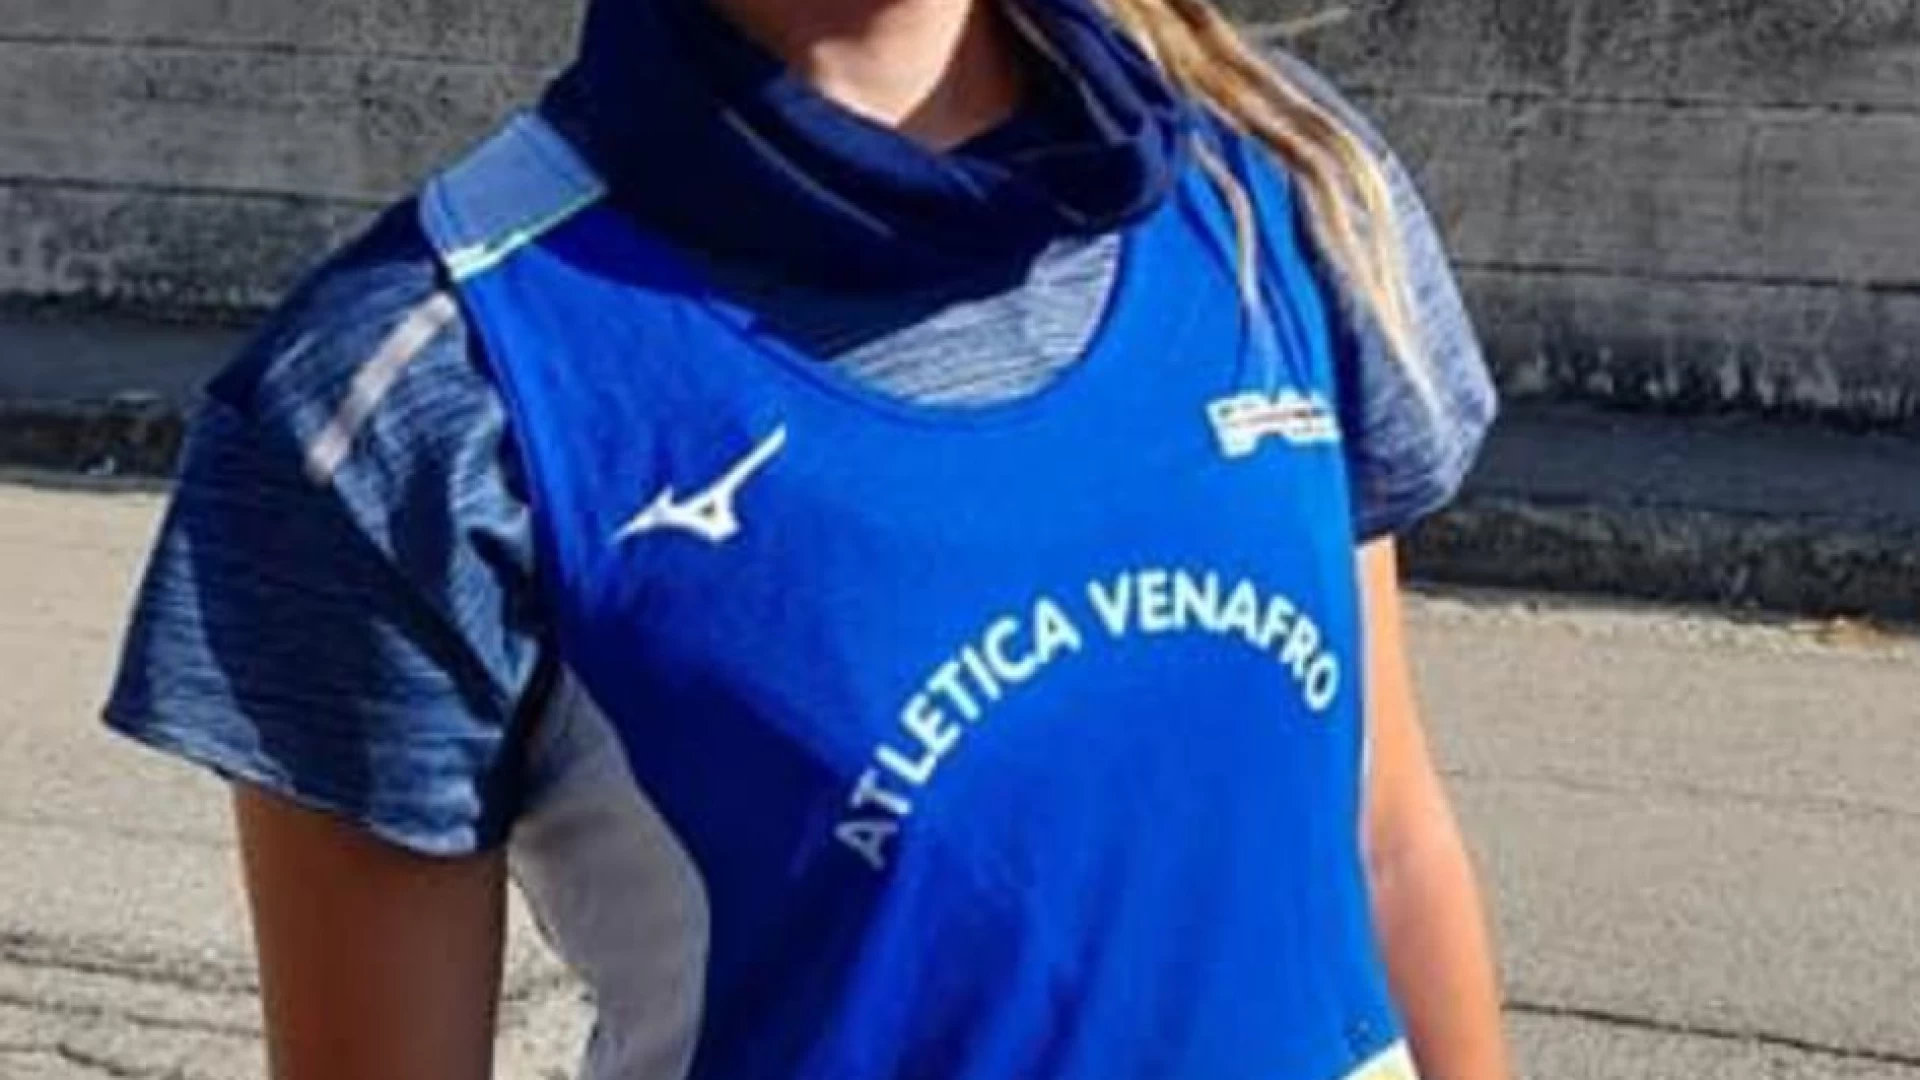 Venafro: Antonella Ciaramella dell’Atletica Venafro-Faga Gioielli inserita nel progetto IUTA per la nazionale ultramaratone.